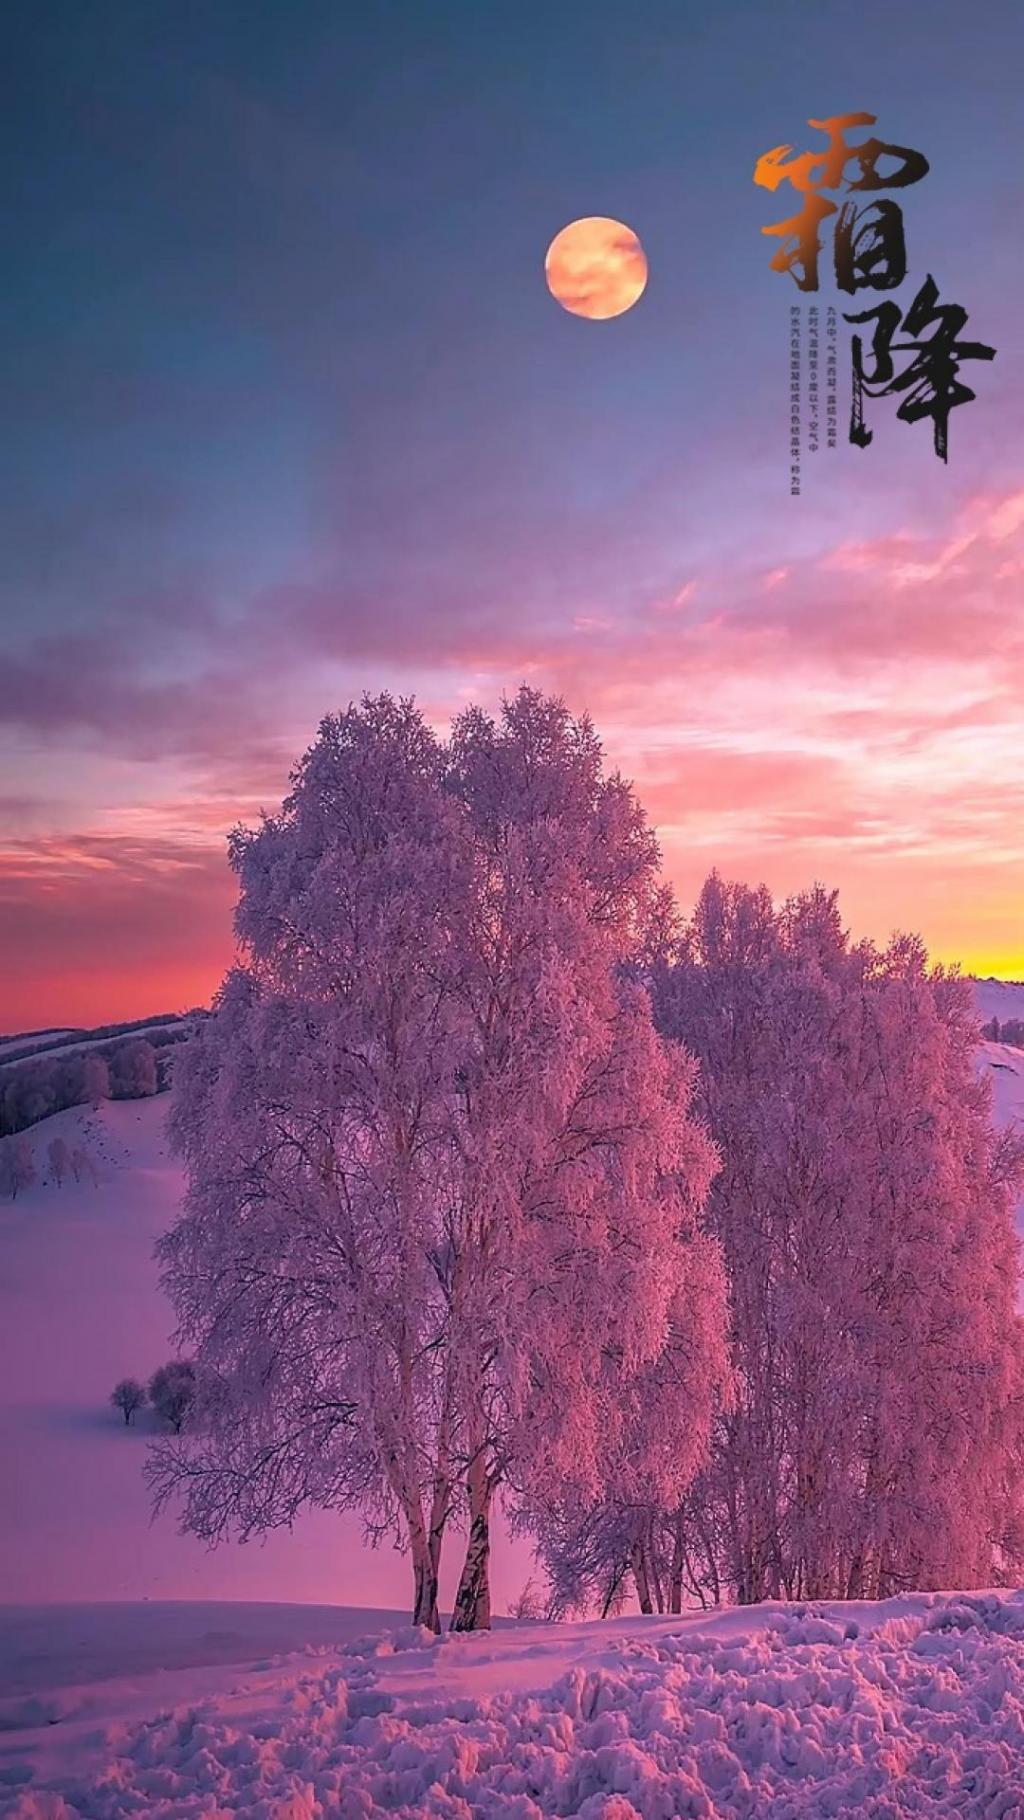 霜降唯美迷人雪景图片手机壁纸 手机壁纸 网页图库手机版